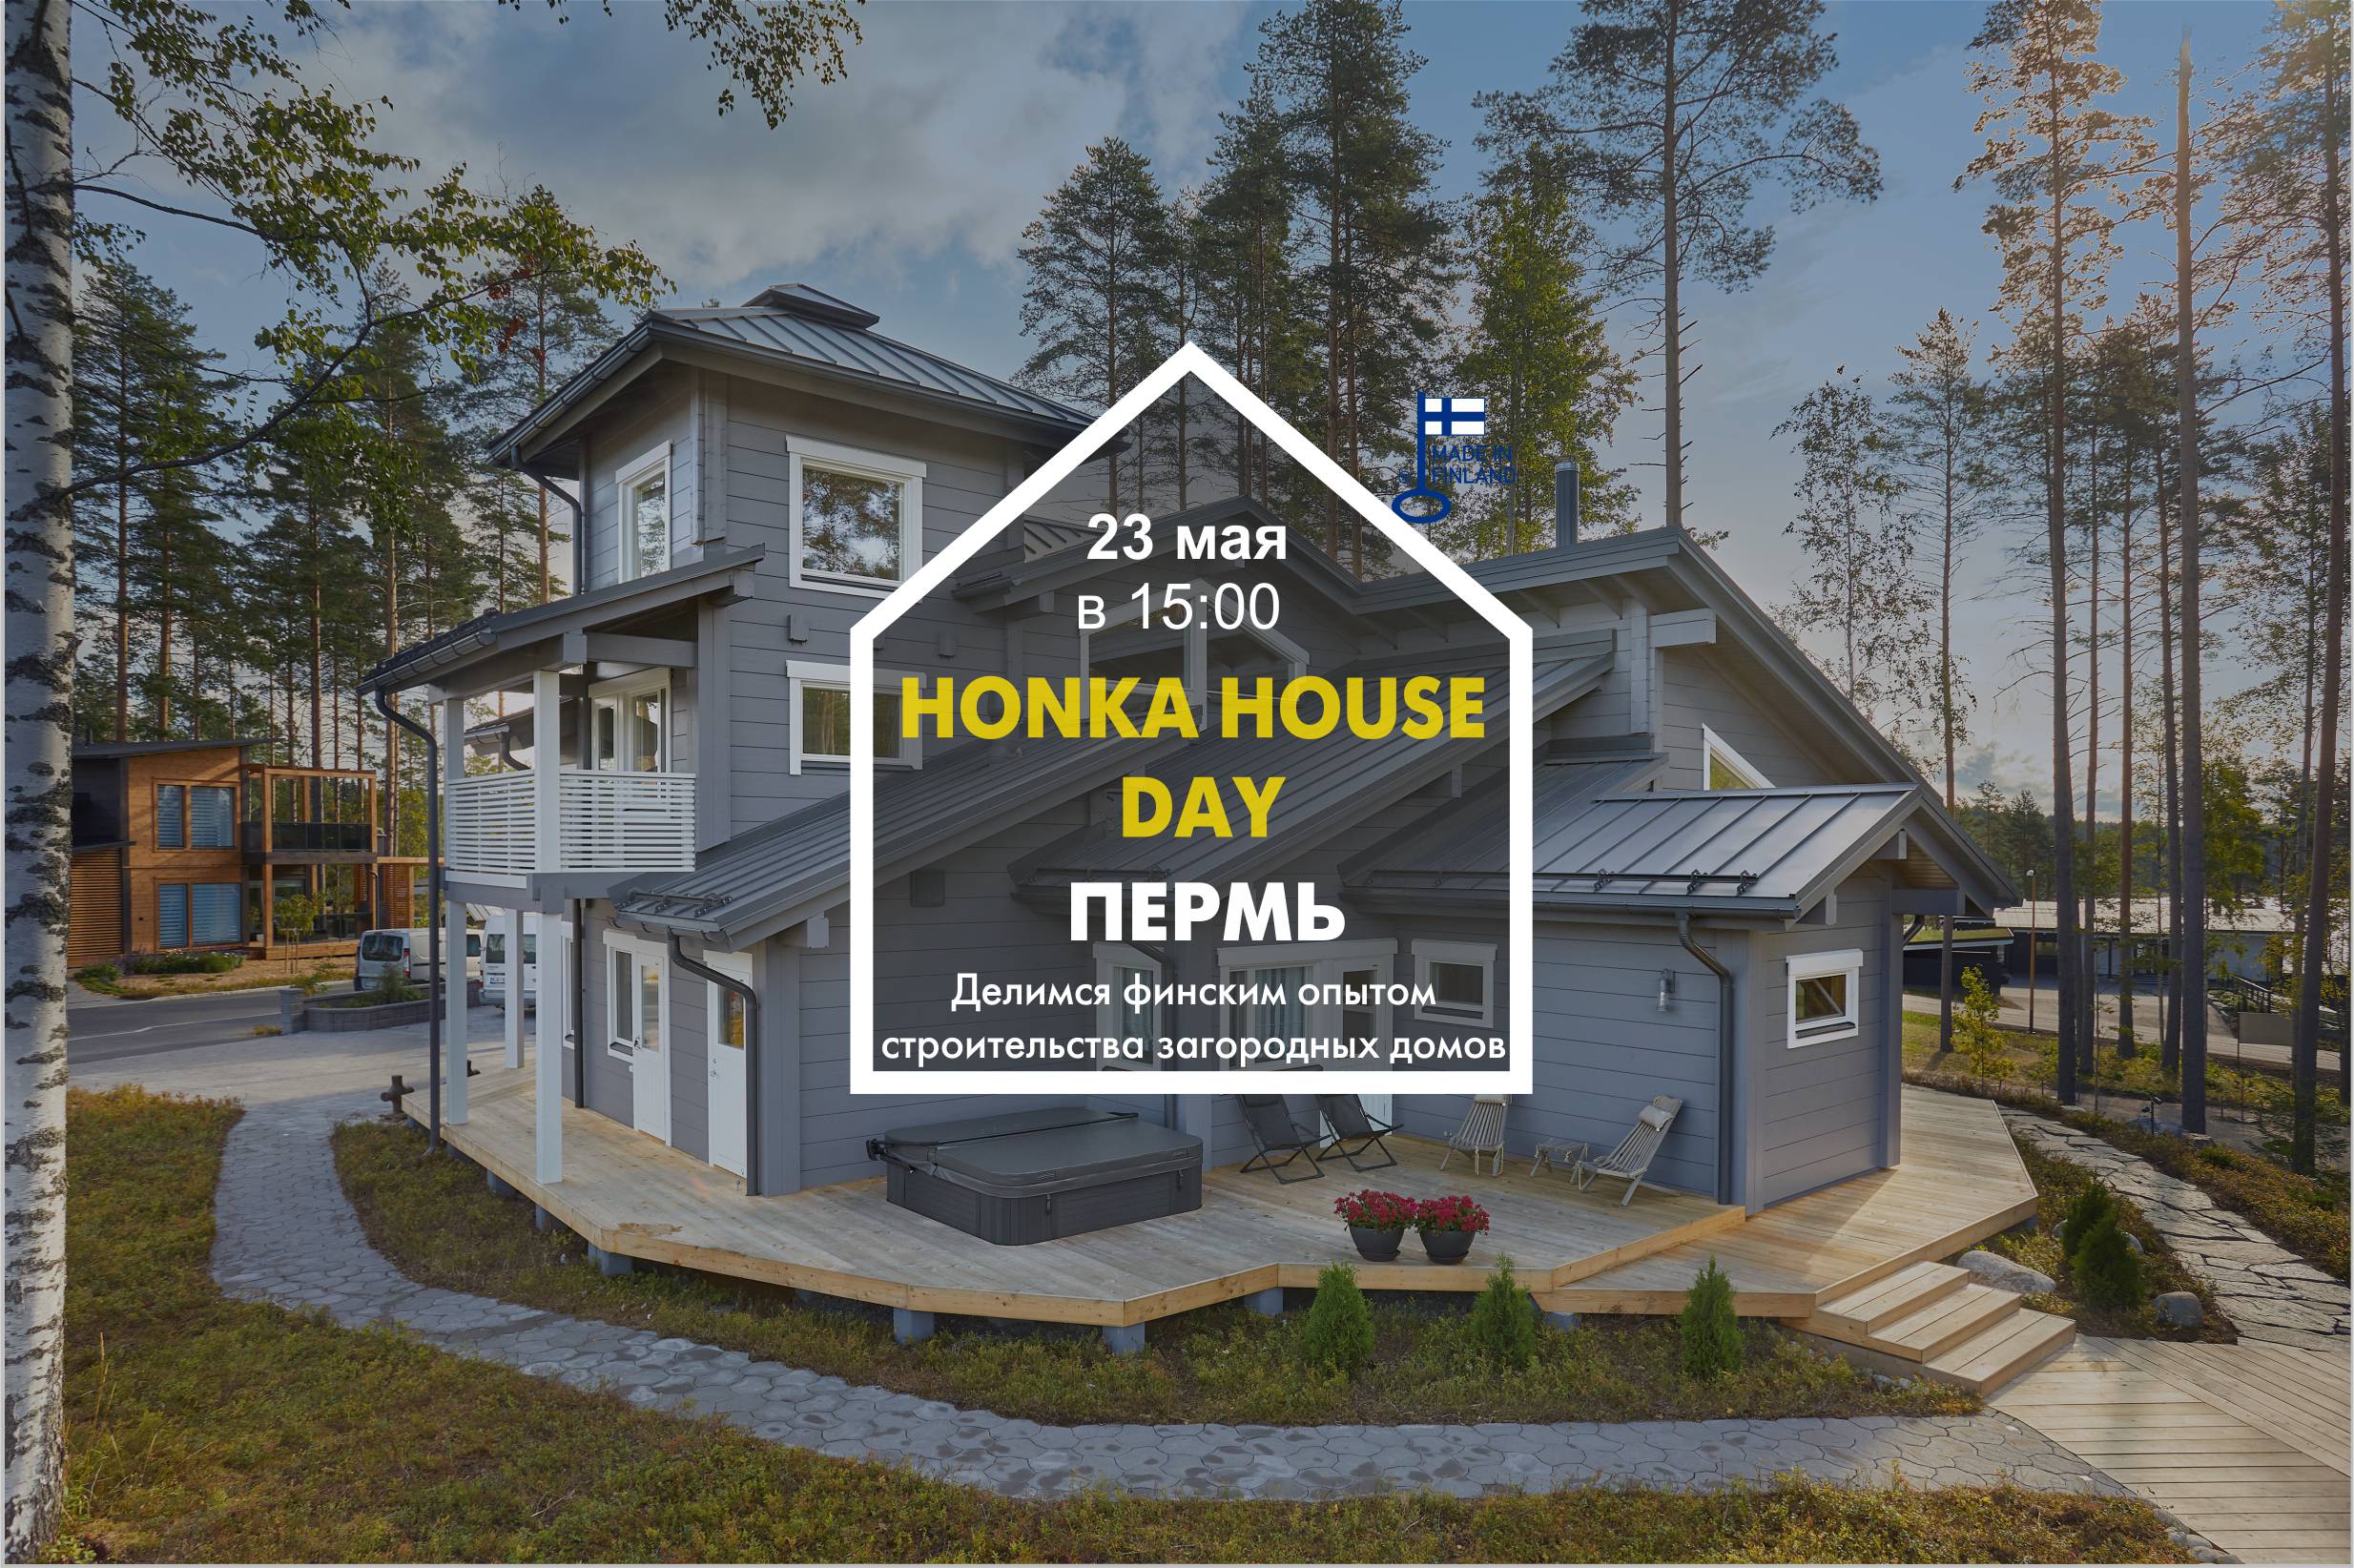 Финские дома от Lumi Рolar – эталон качества загородной жизни